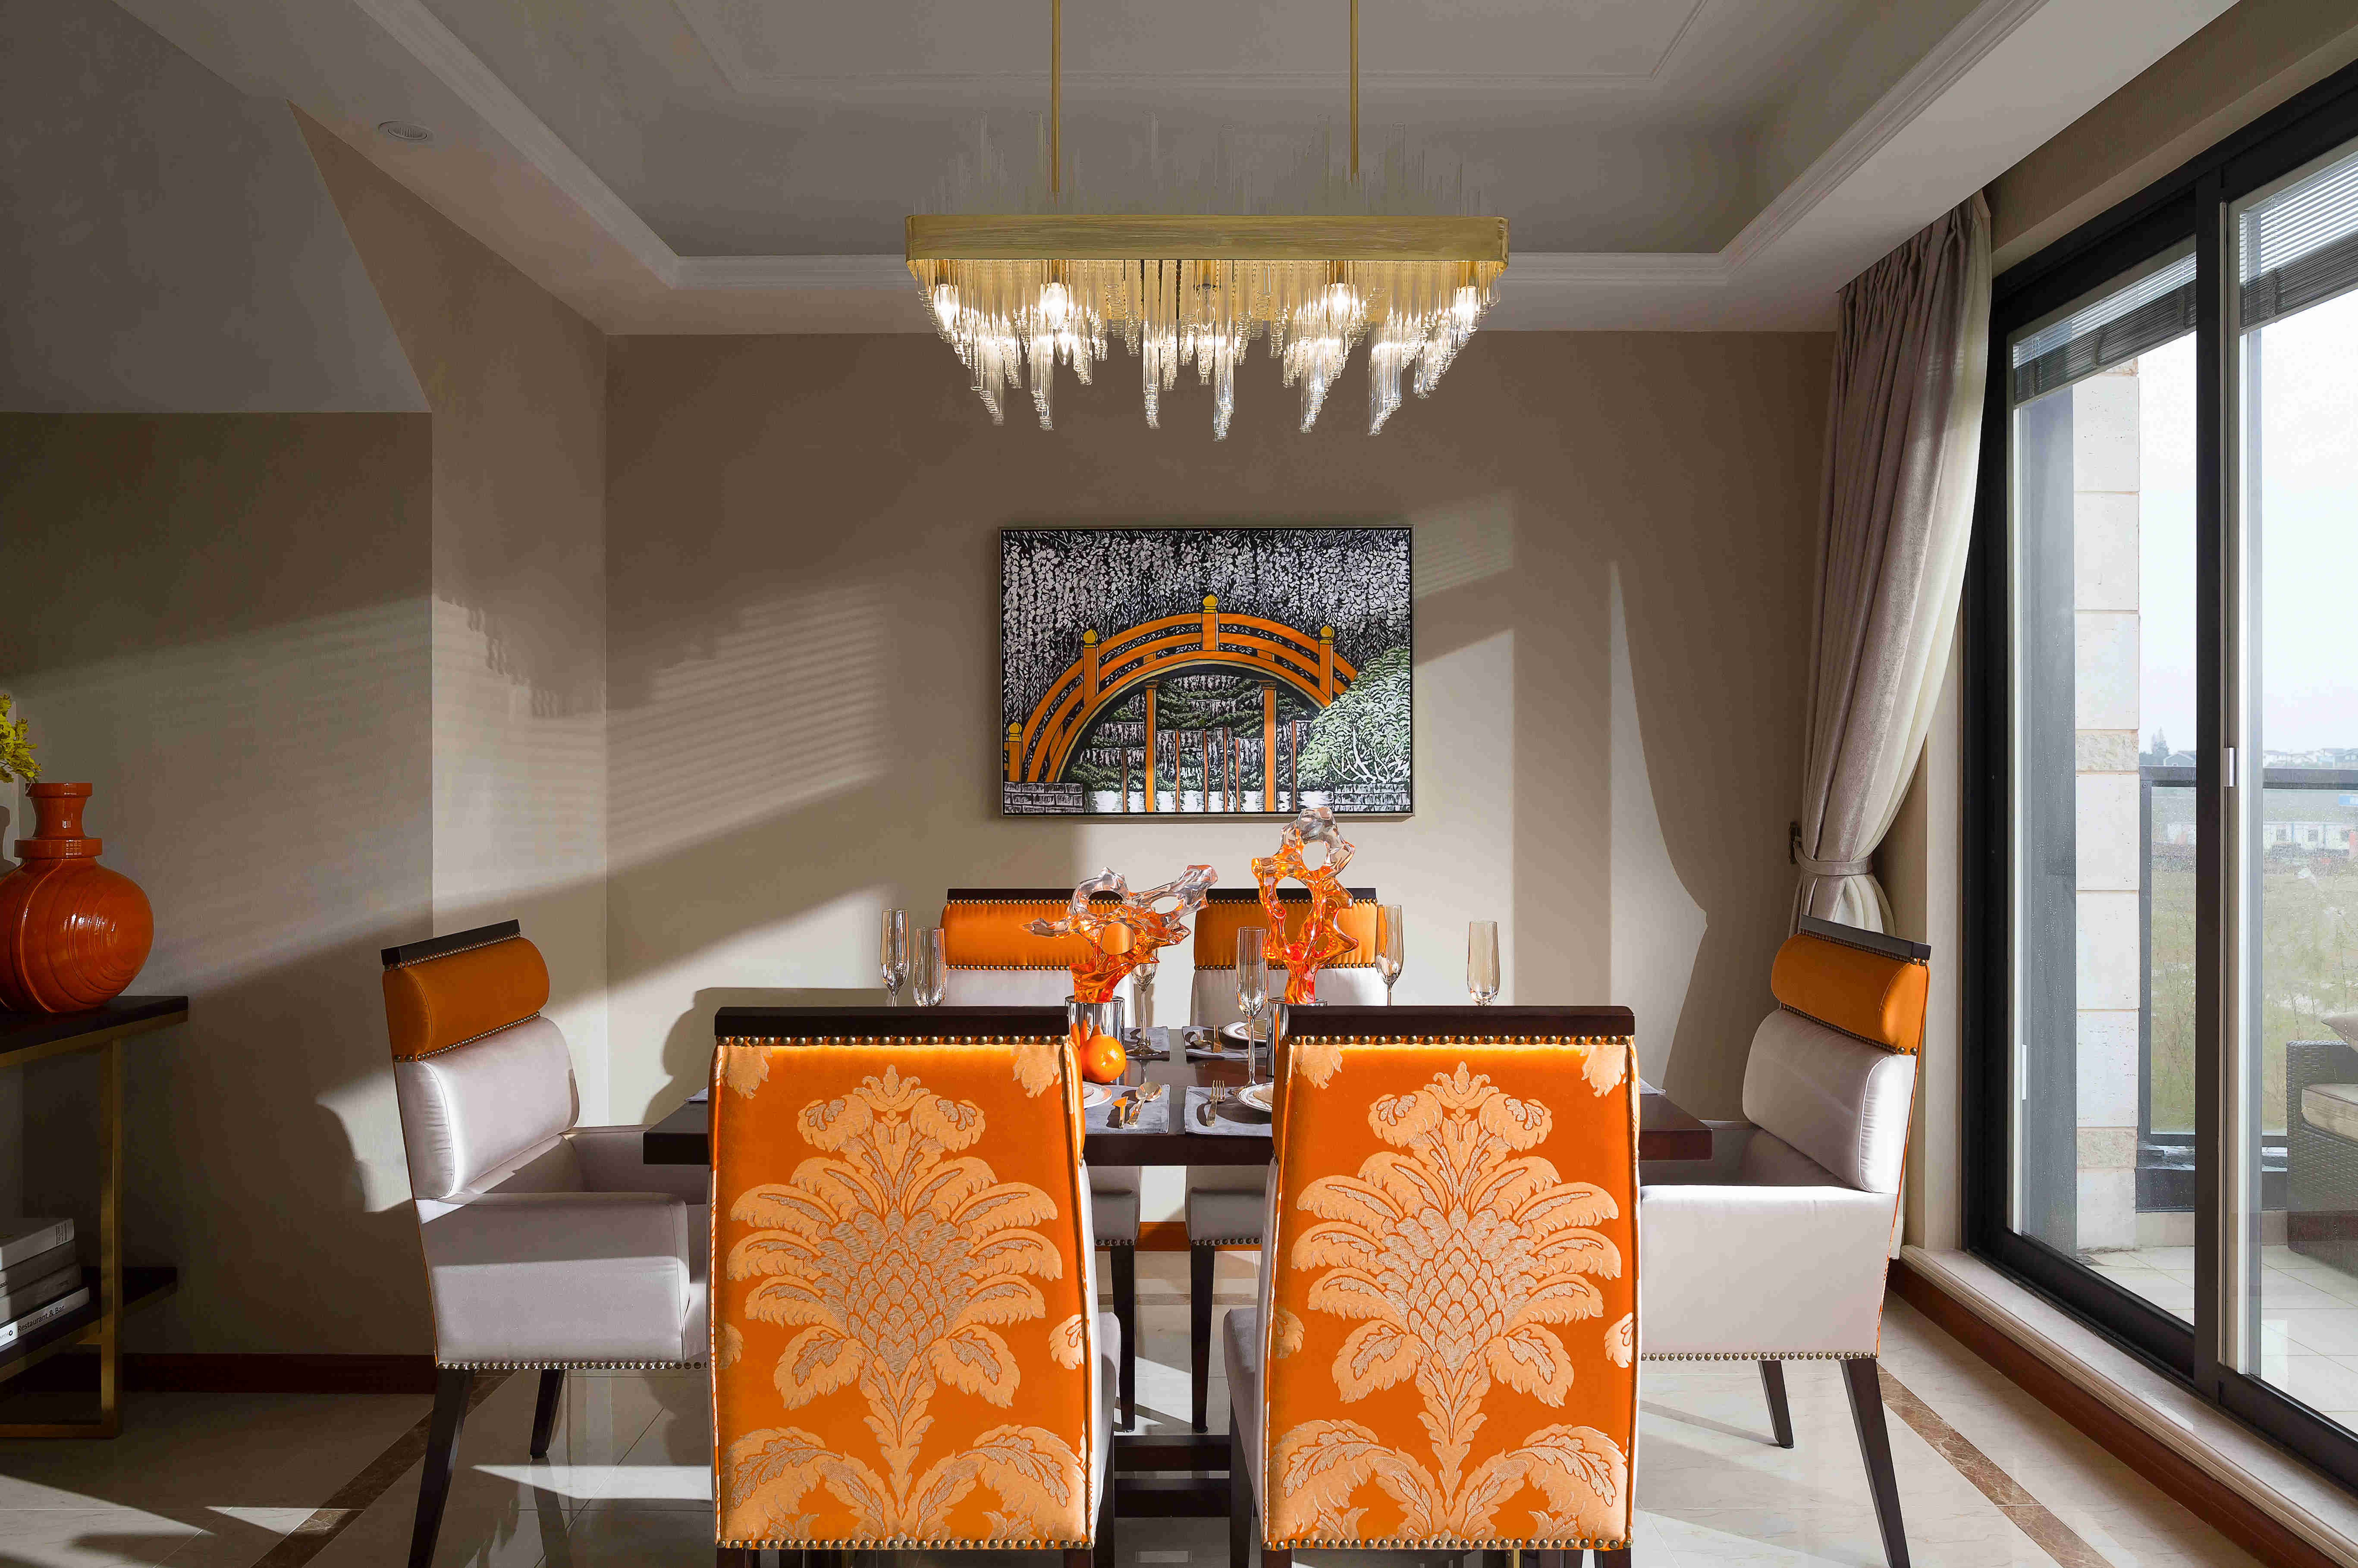 餐厅空间内的软装陈设都以橘色和白色为主，欧式元素对空间加以柔和的气质。